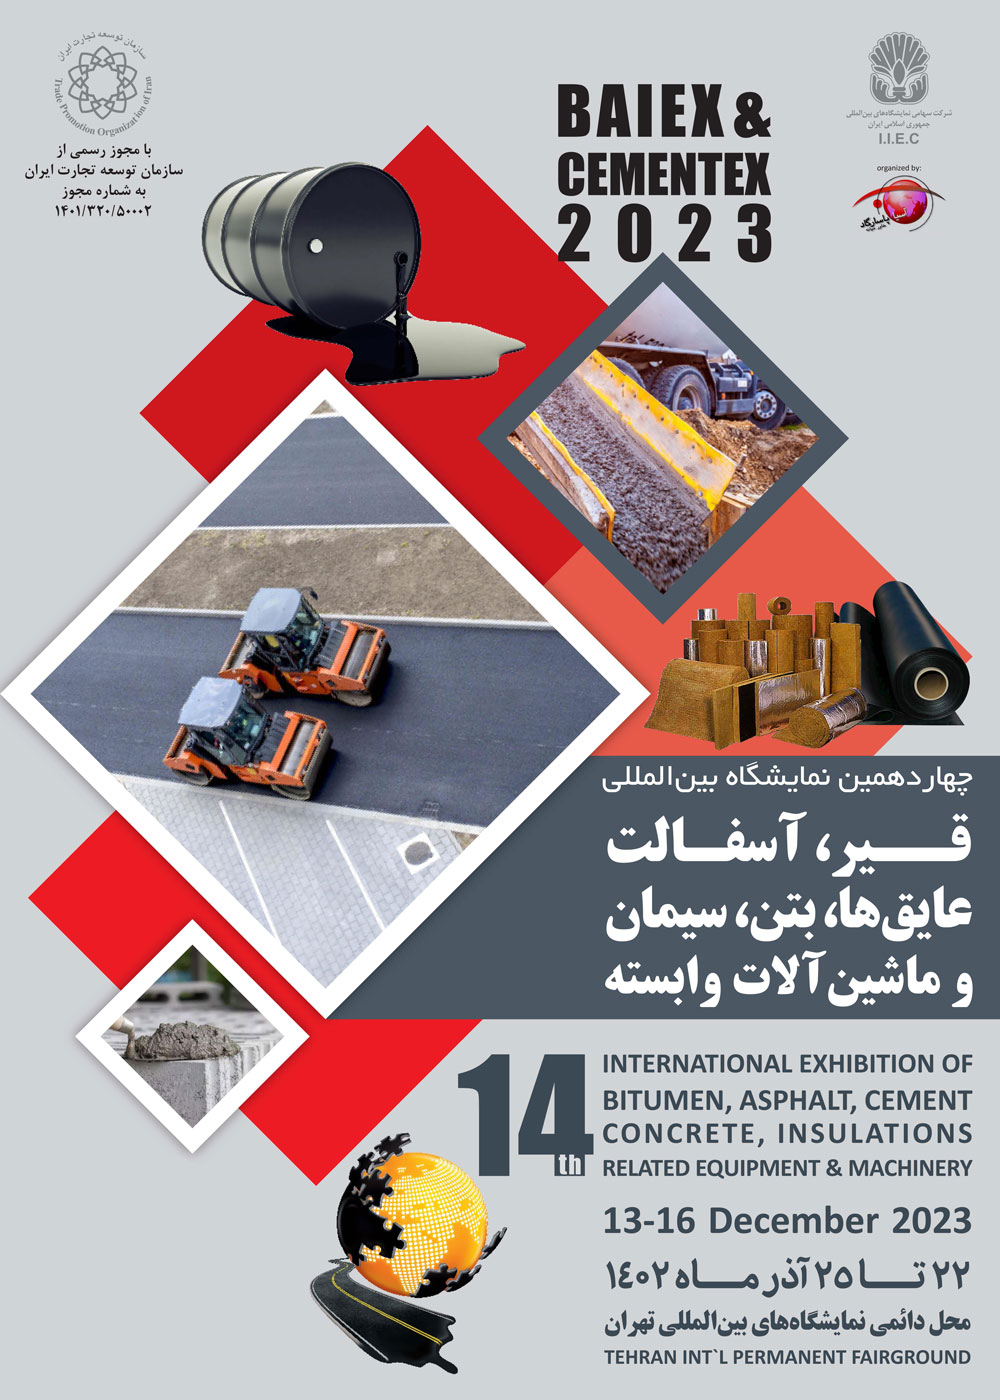 baiex posterr - The 14th International Building Material (BAIEX & CEMENTEX) Exhibition 2023 in Iran/Tehran